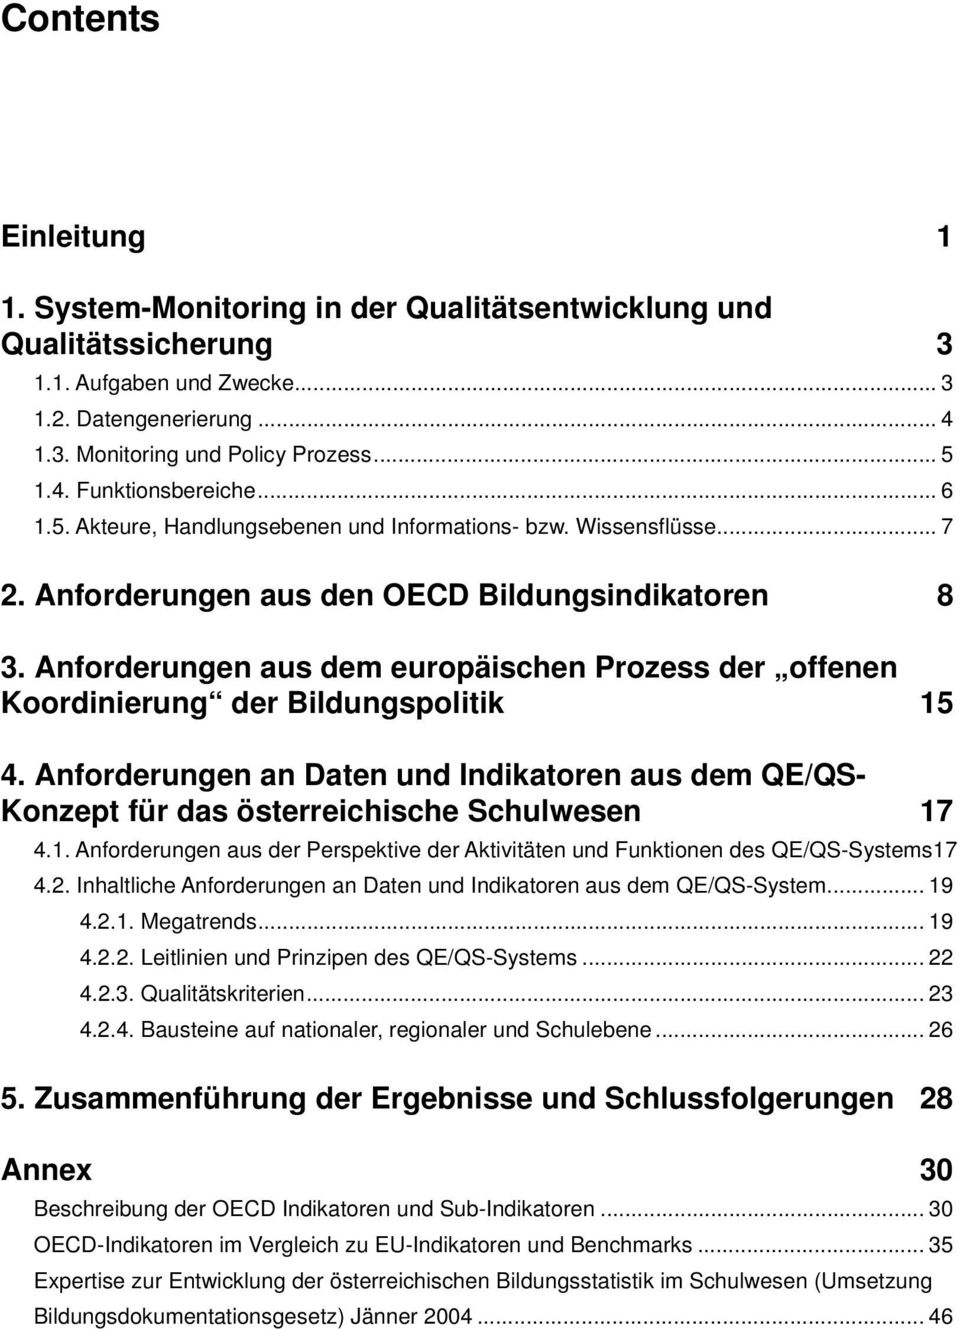 Anforderungen aus dem europäischen Prozess der offenen Koordinierung der Bildungspolitik 15 4. Anforderungen an Daten und Indikatoren aus dem QE/QS- Konzept für das österreichische Schulwesen 17 4.1. Anforderungen aus der Perspektive der Aktivitäten und Funktionen des QE/QS-Systems17 4.